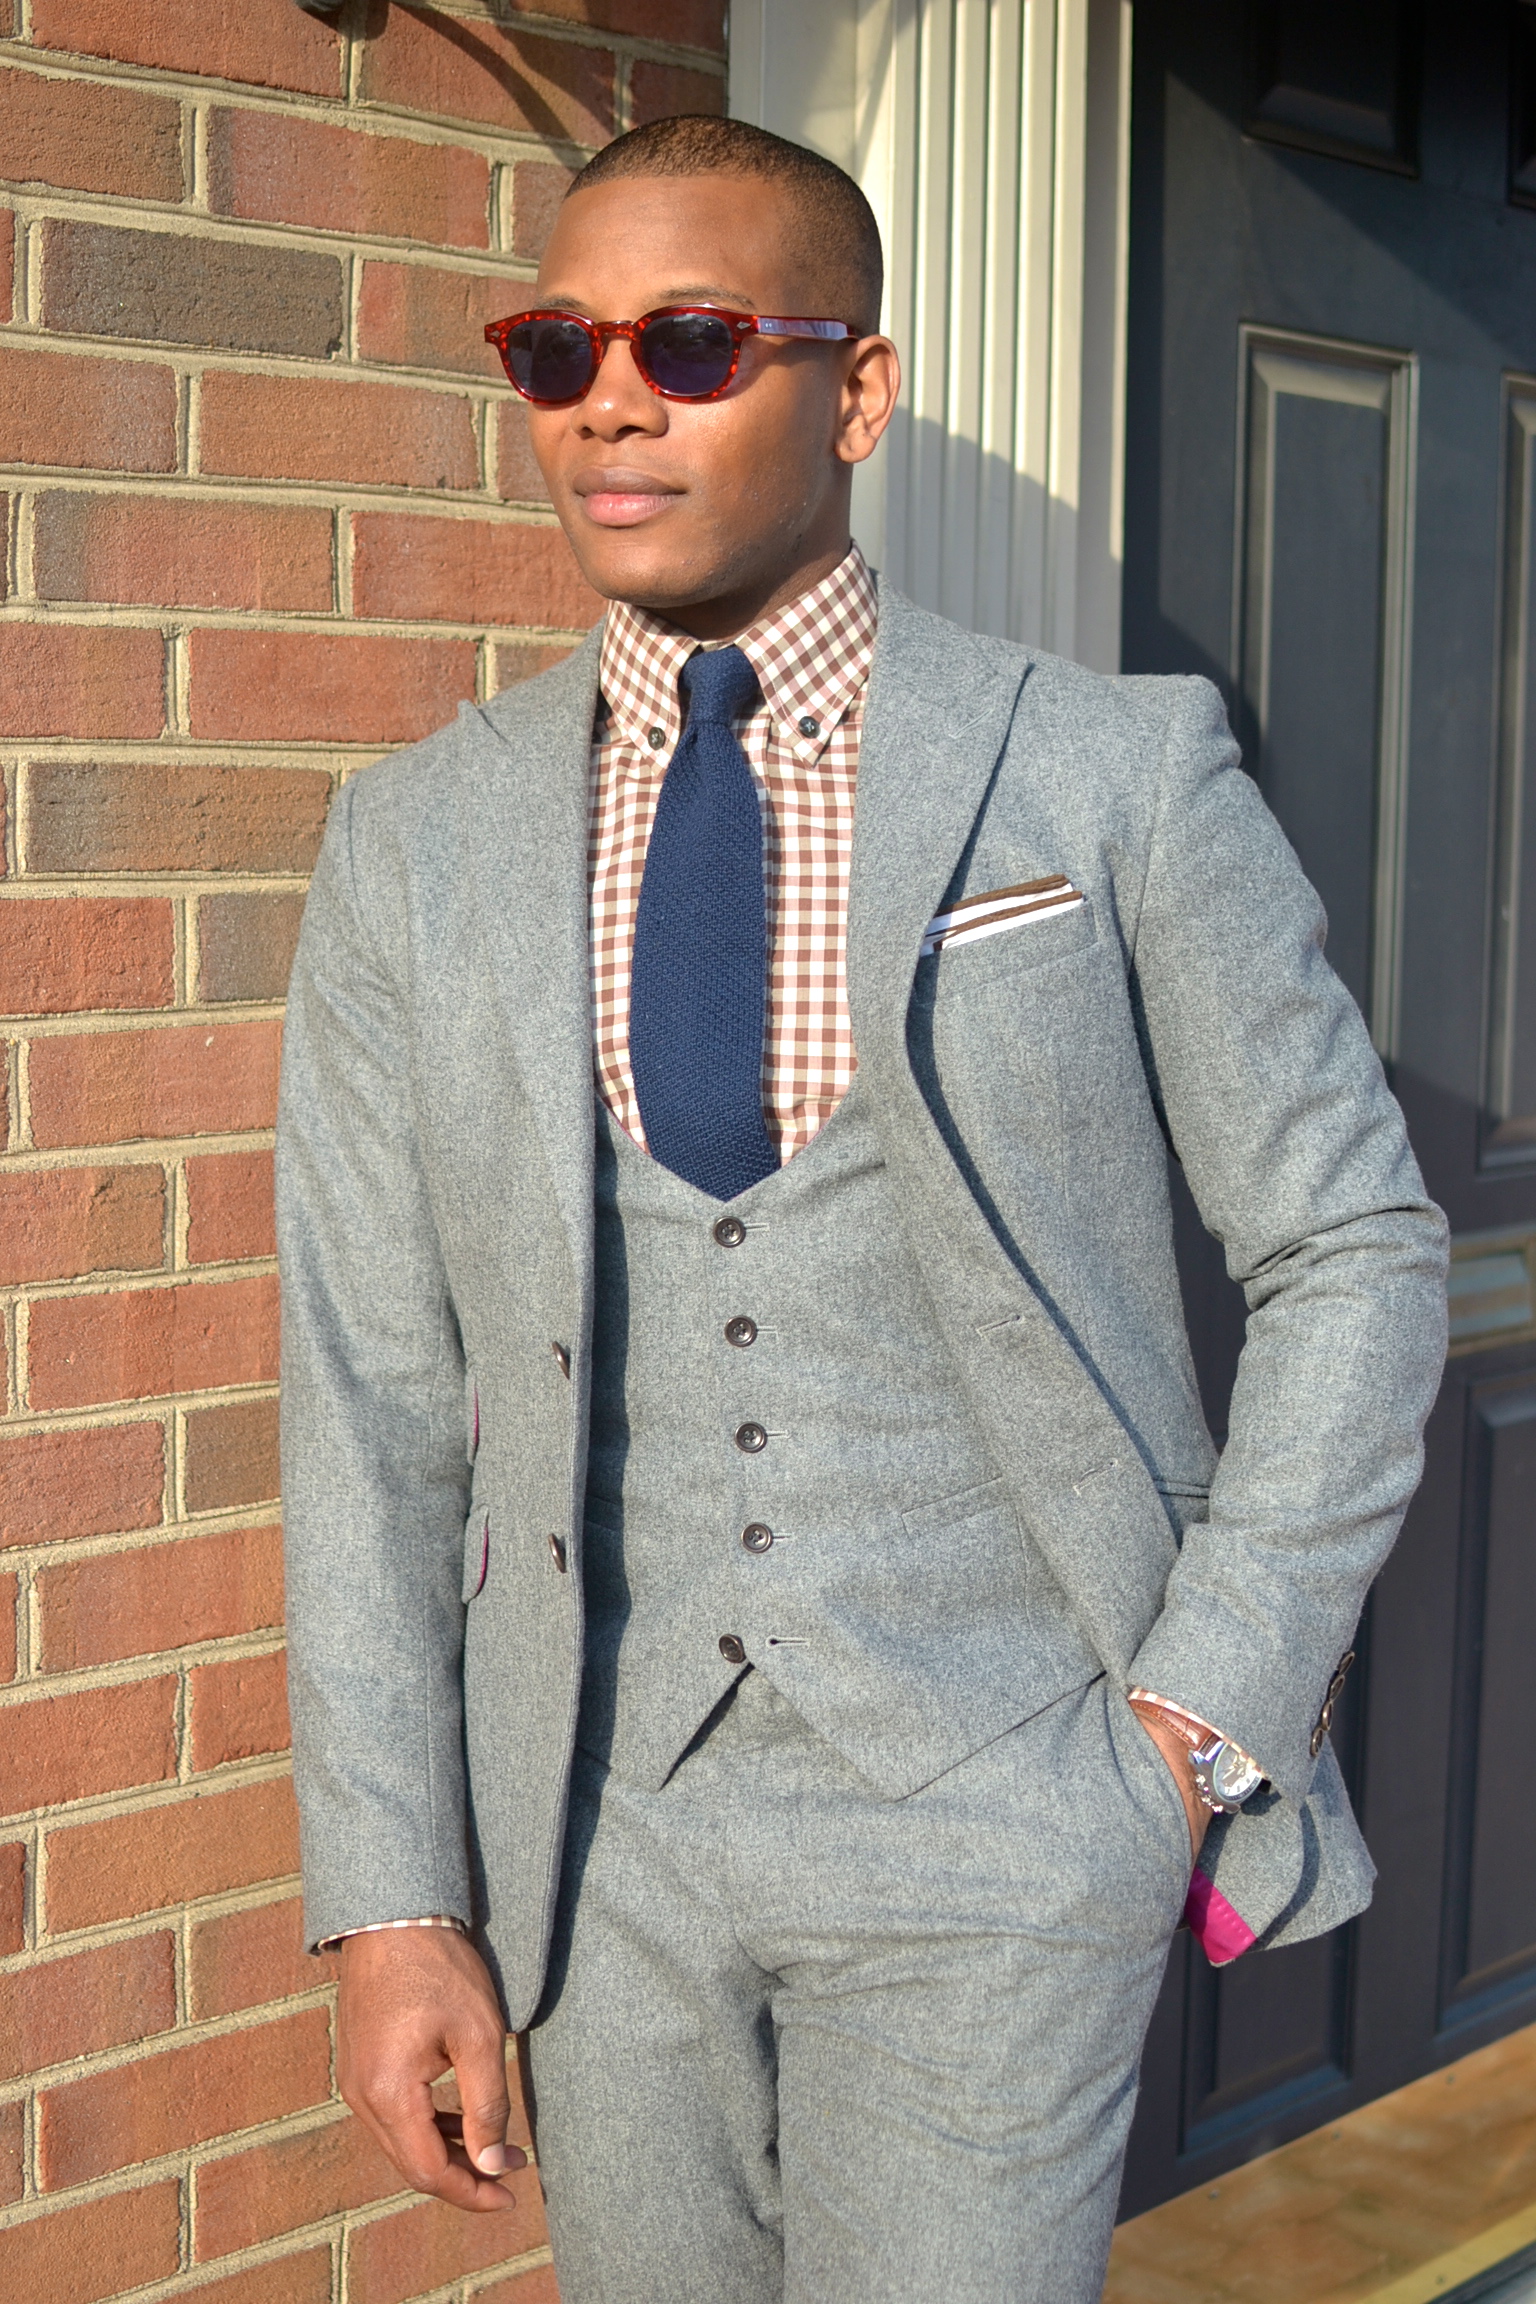 Chukka Boots & Winter Suits 3 Ways – Men's Style Pro | Men's Style Blog ...